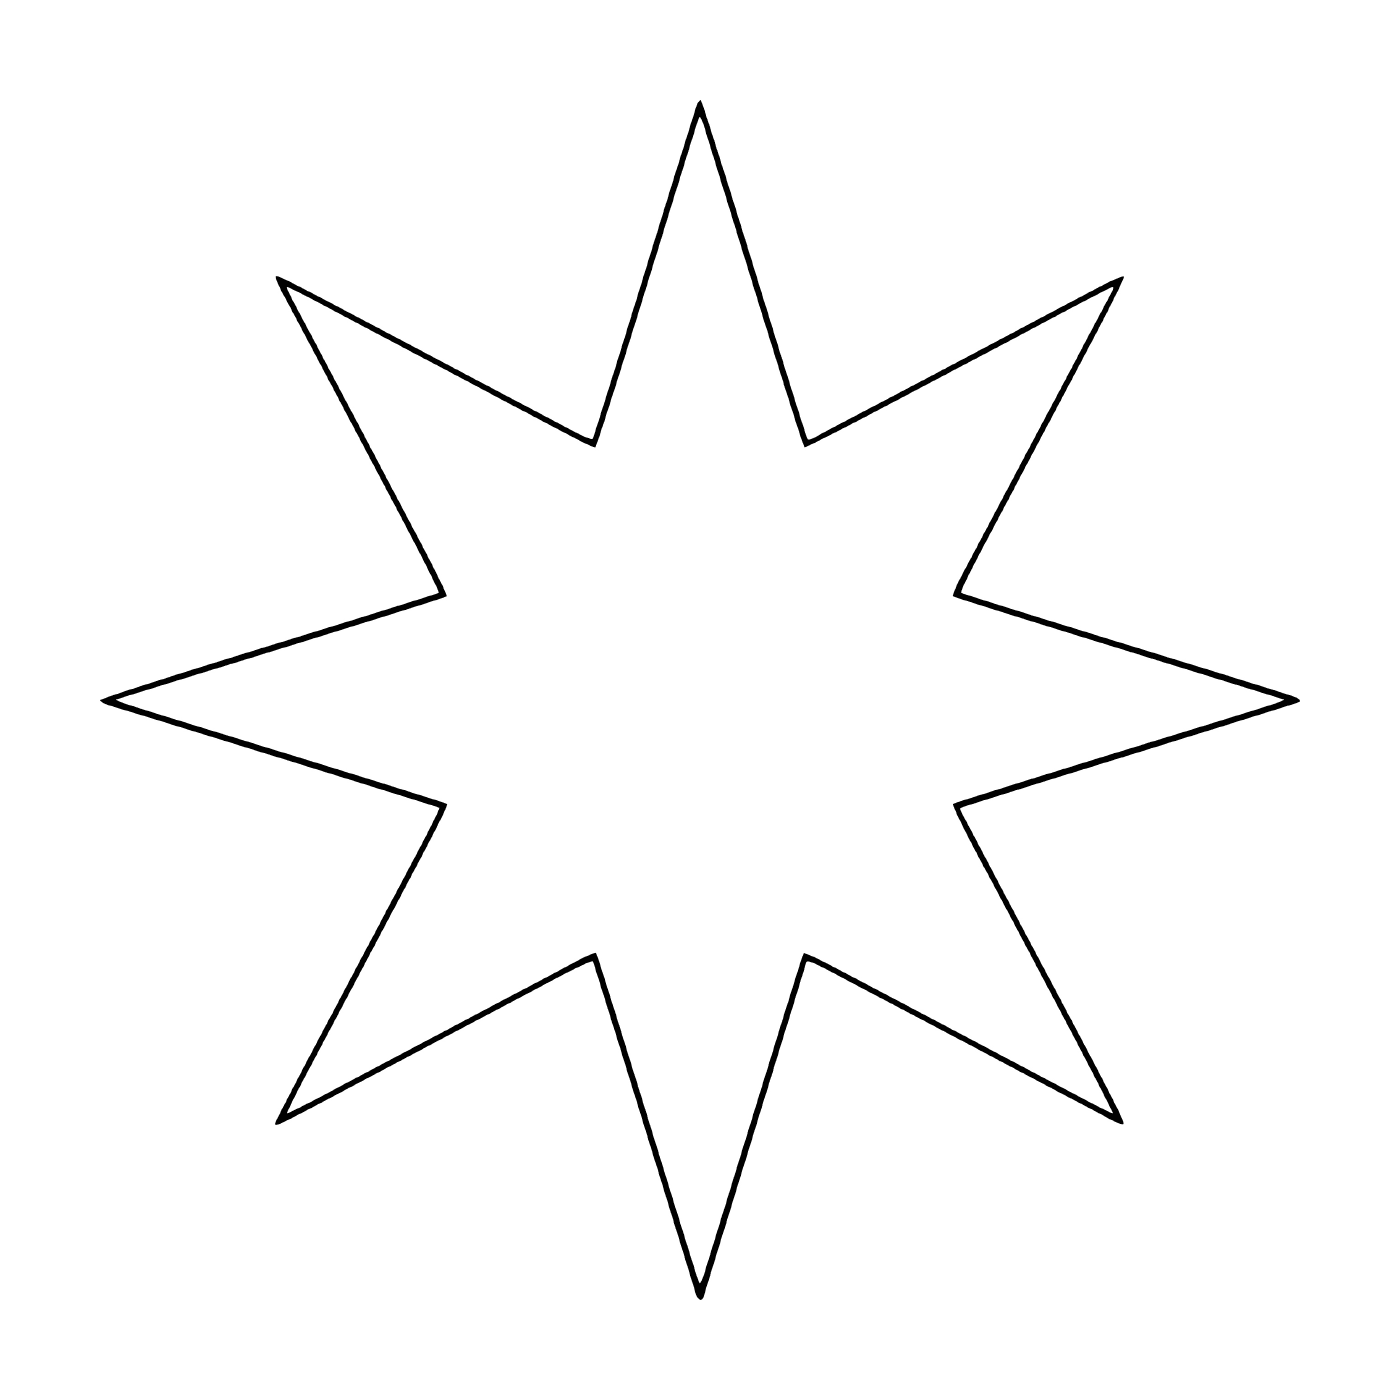   Une étoile à huit branches 